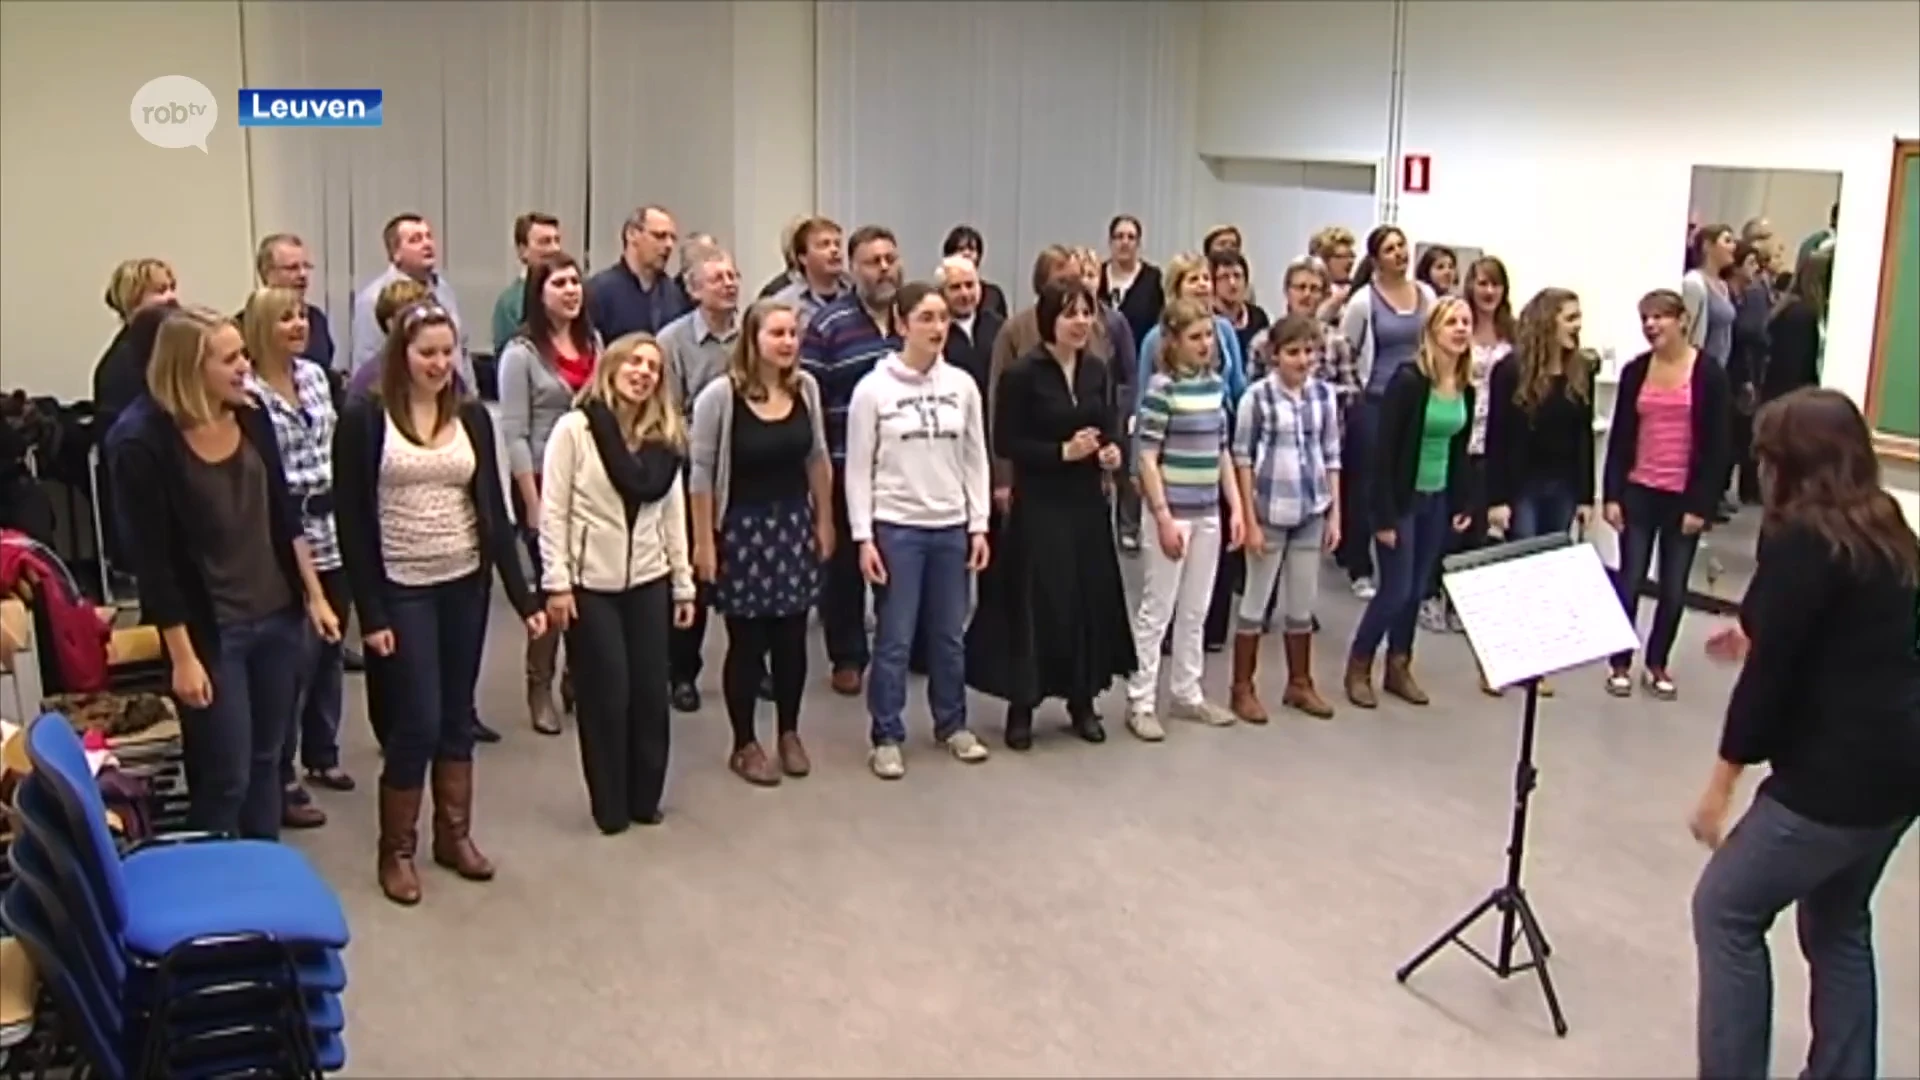 30CC Leuven is op zoek naar 28 zangers voor koor: "Ervaring niet nodig, wel een stevige portie goesting"